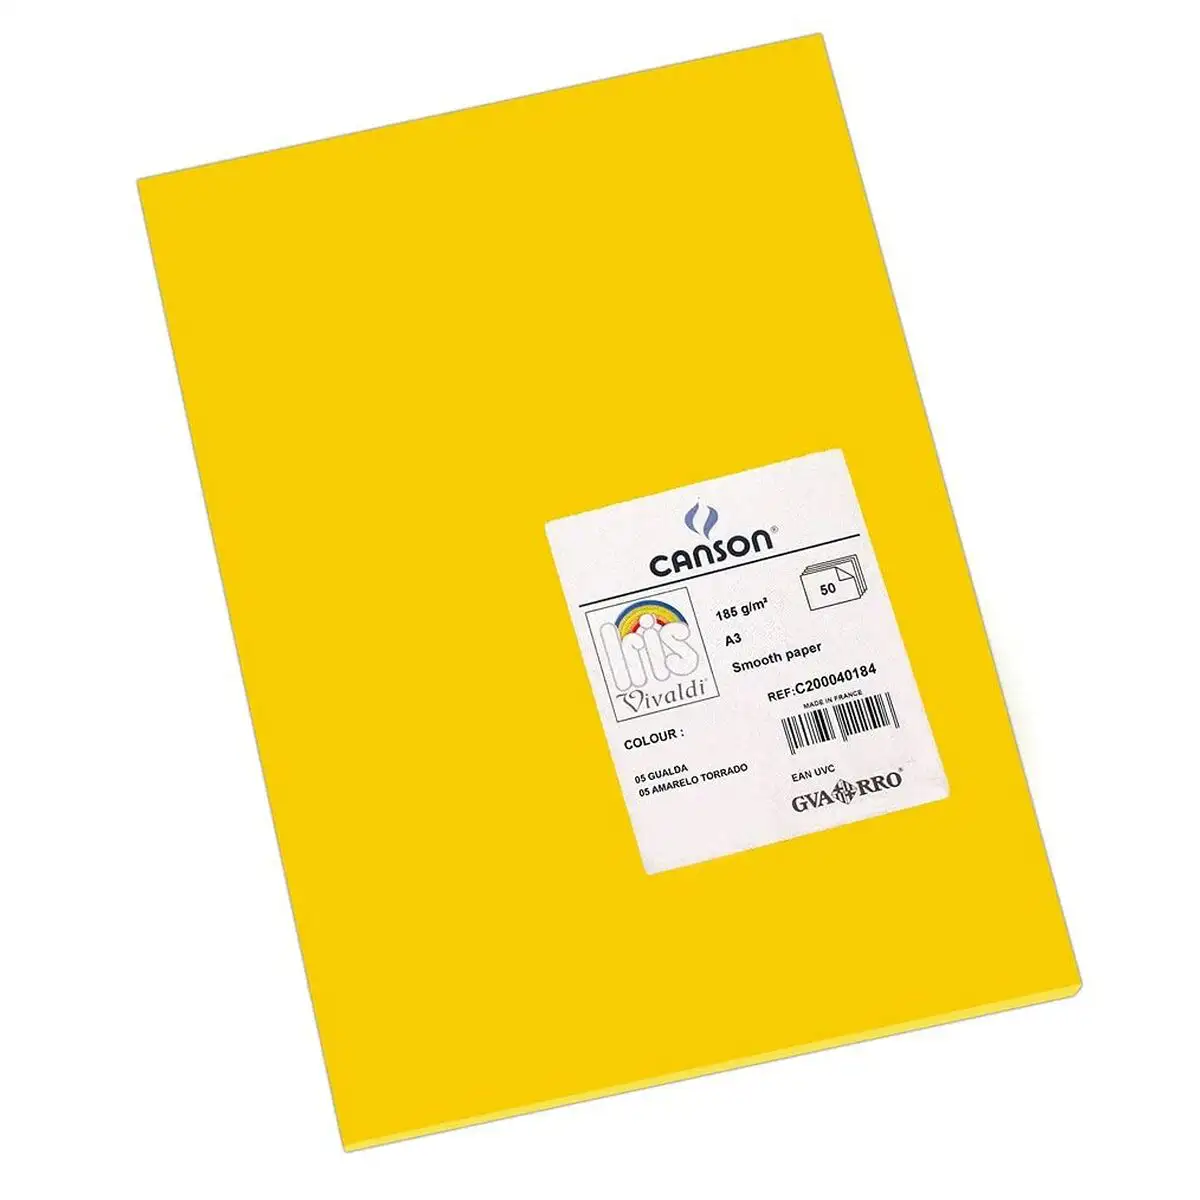 Papiers carton iris gualda 29 7 x 42 cm jaune 185 g 50 unites _9178. DIAYTAR SENEGAL - Où Choisir Devient une Découverte. Explorez notre boutique en ligne et trouvez des articles qui vous surprennent et vous ravissent à chaque clic.